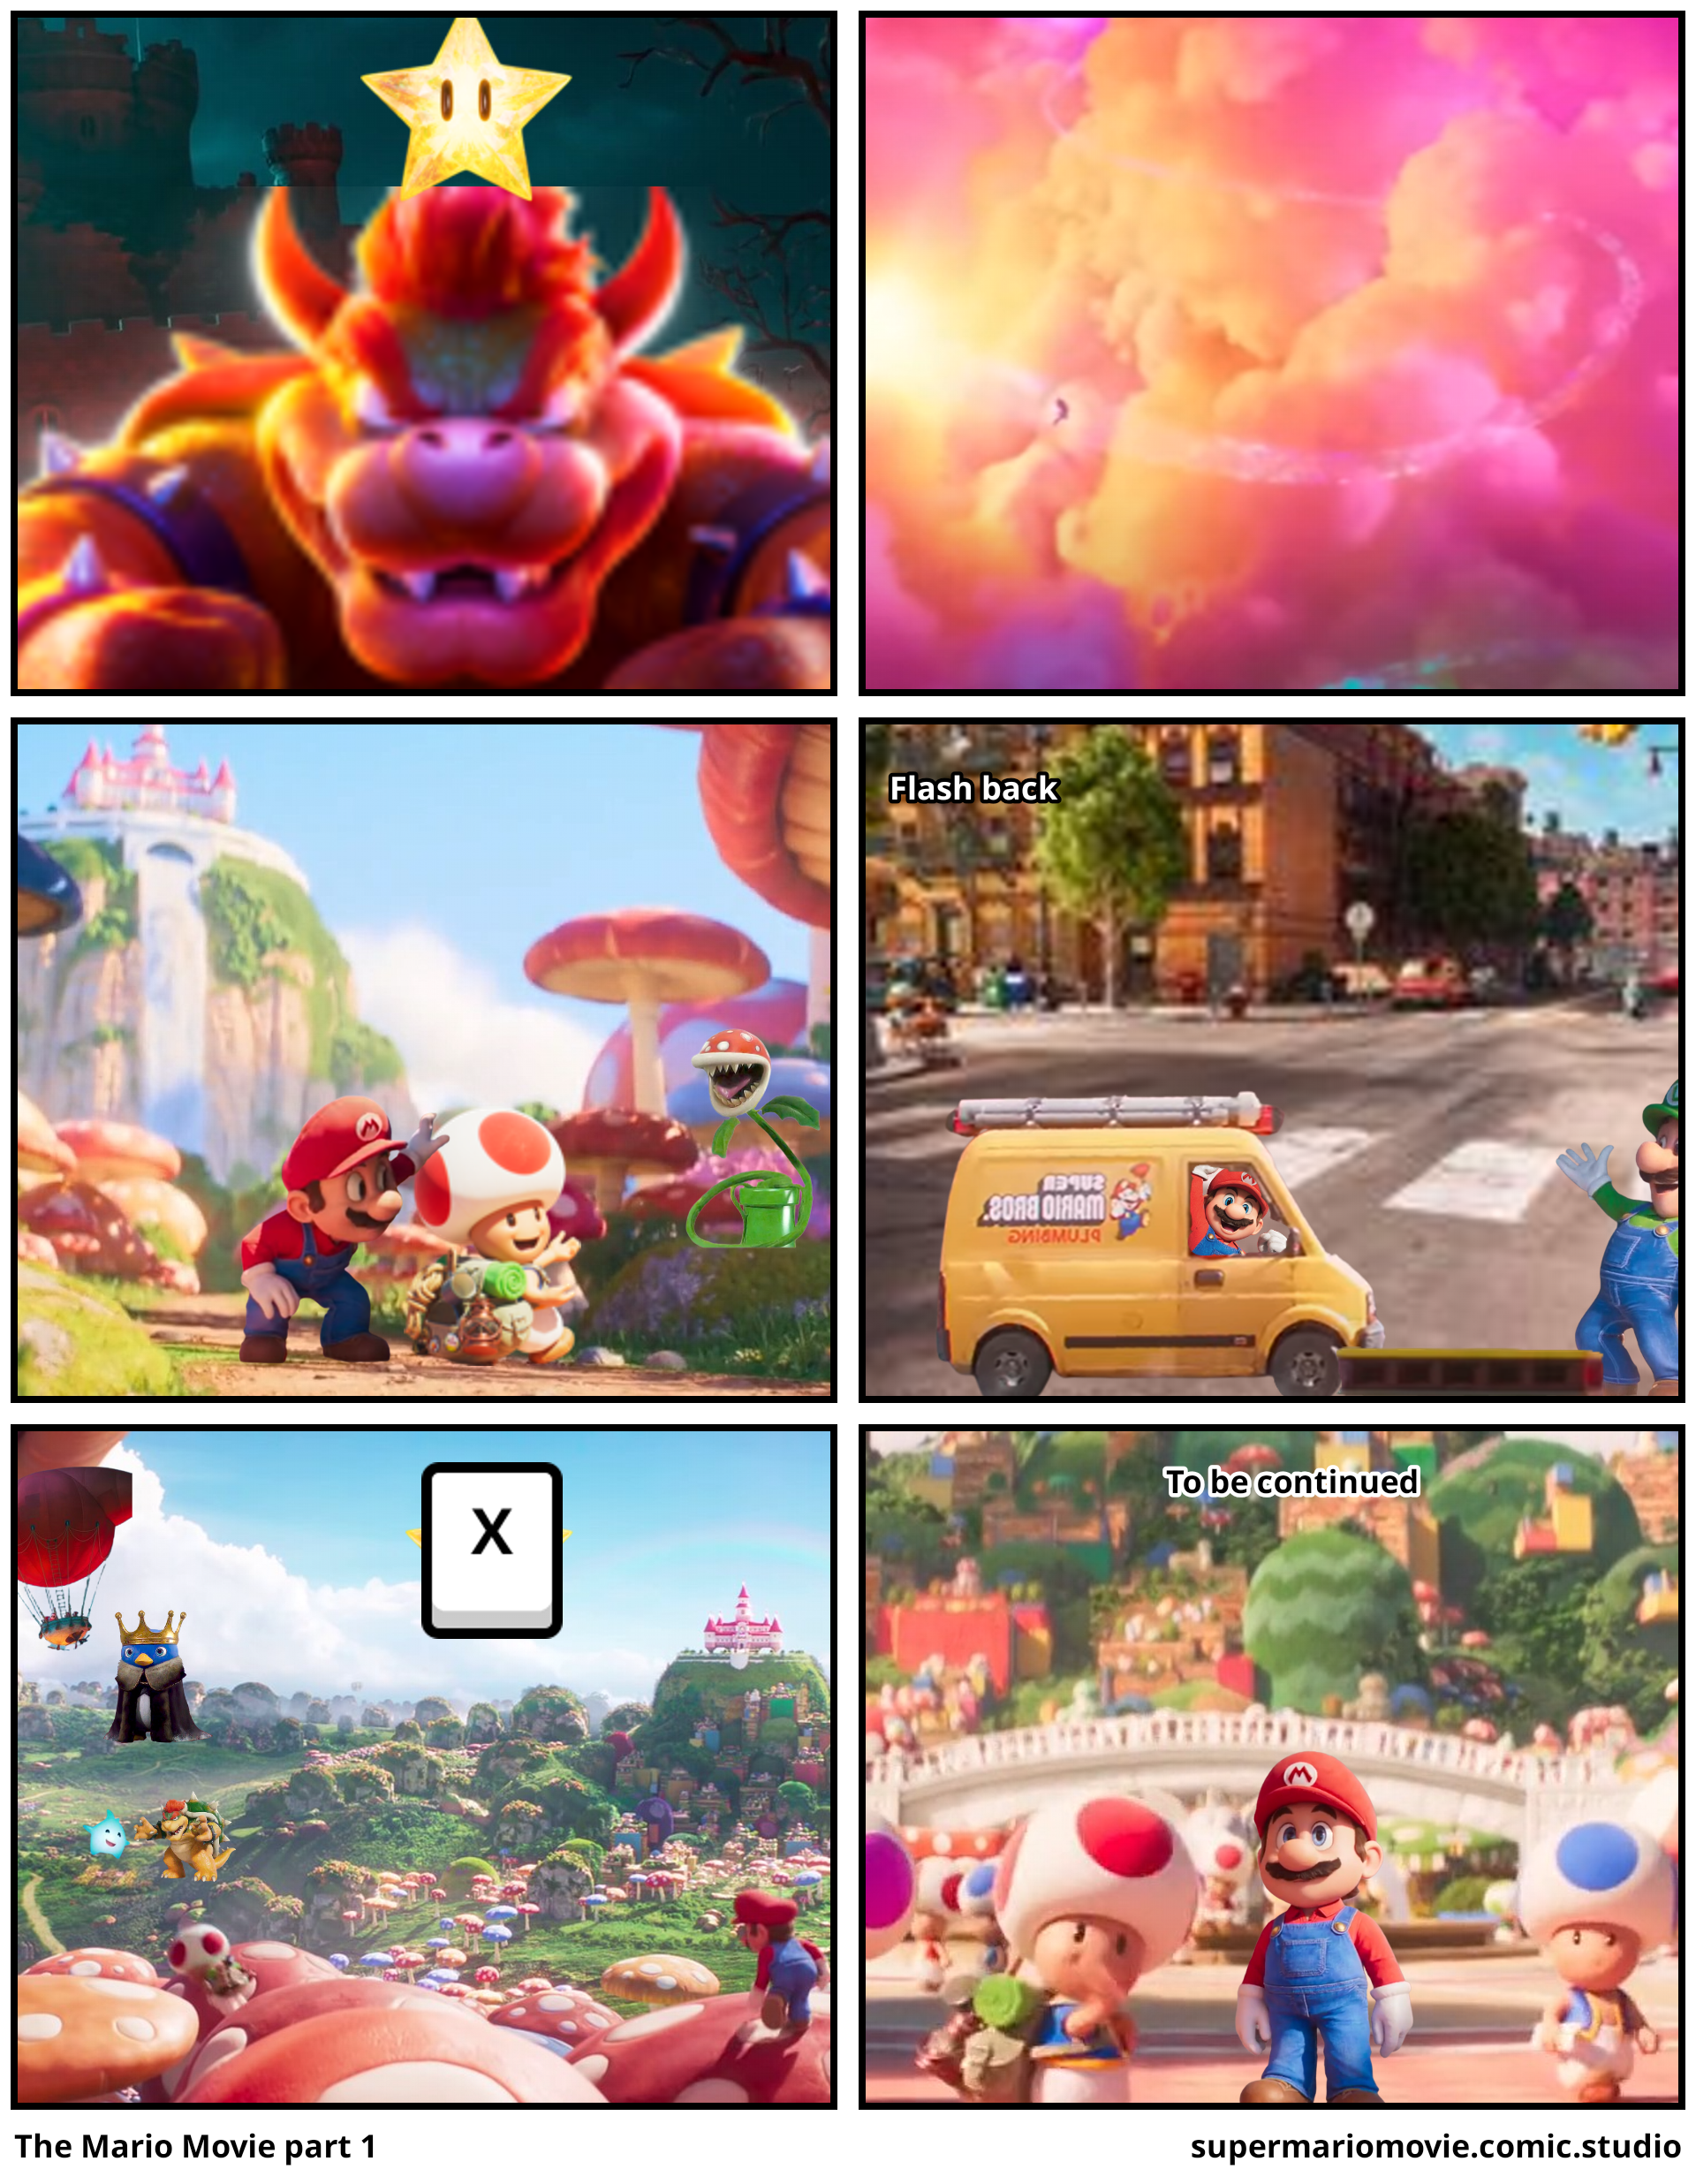 The Mario Movie part 1